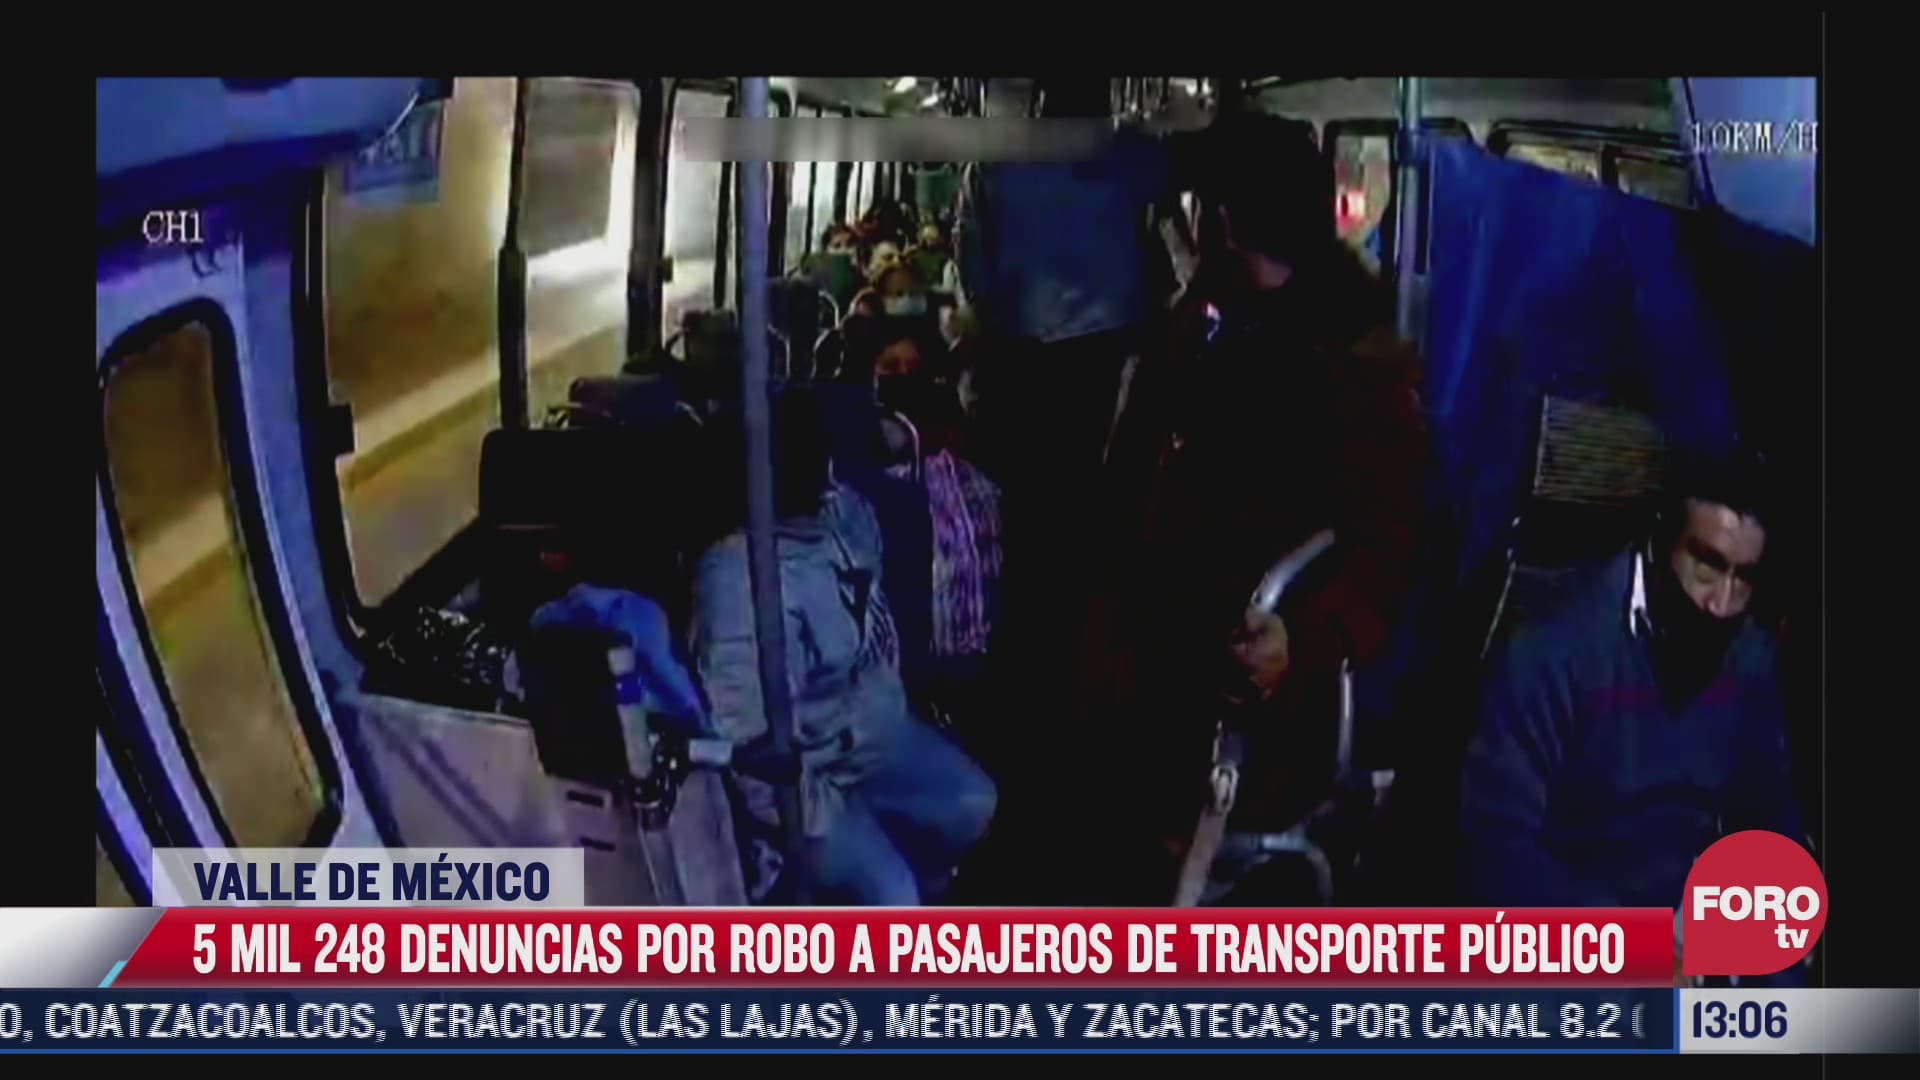 se registra repunte de denuncias por robos al transporte publico en el valle de mexico